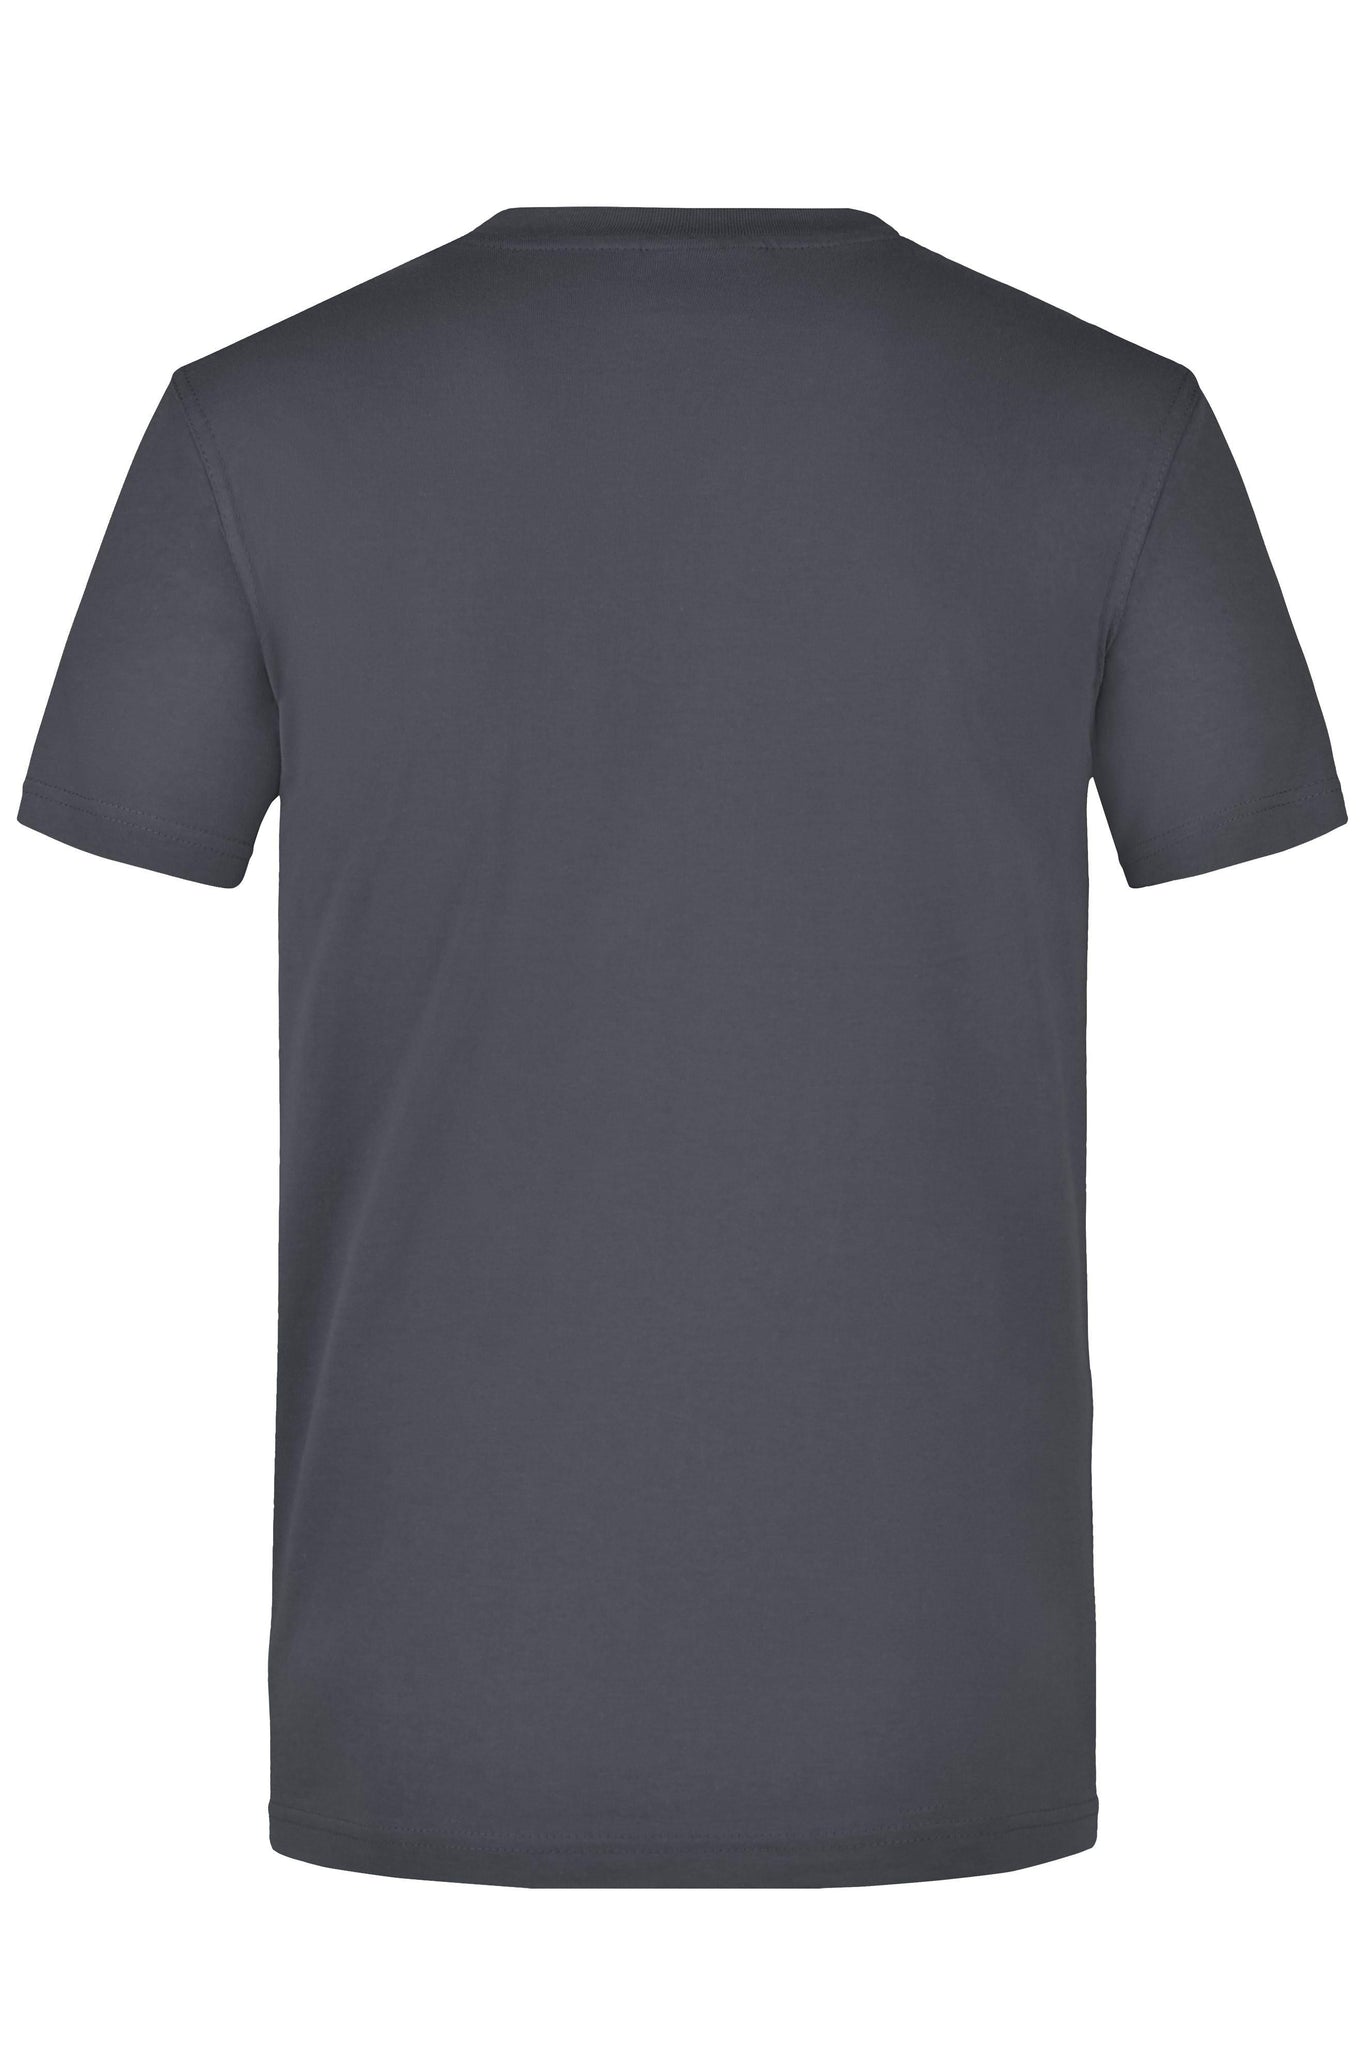 JN T-SHIRT POCKET - Arbejds T-Shirt - JA Profil 